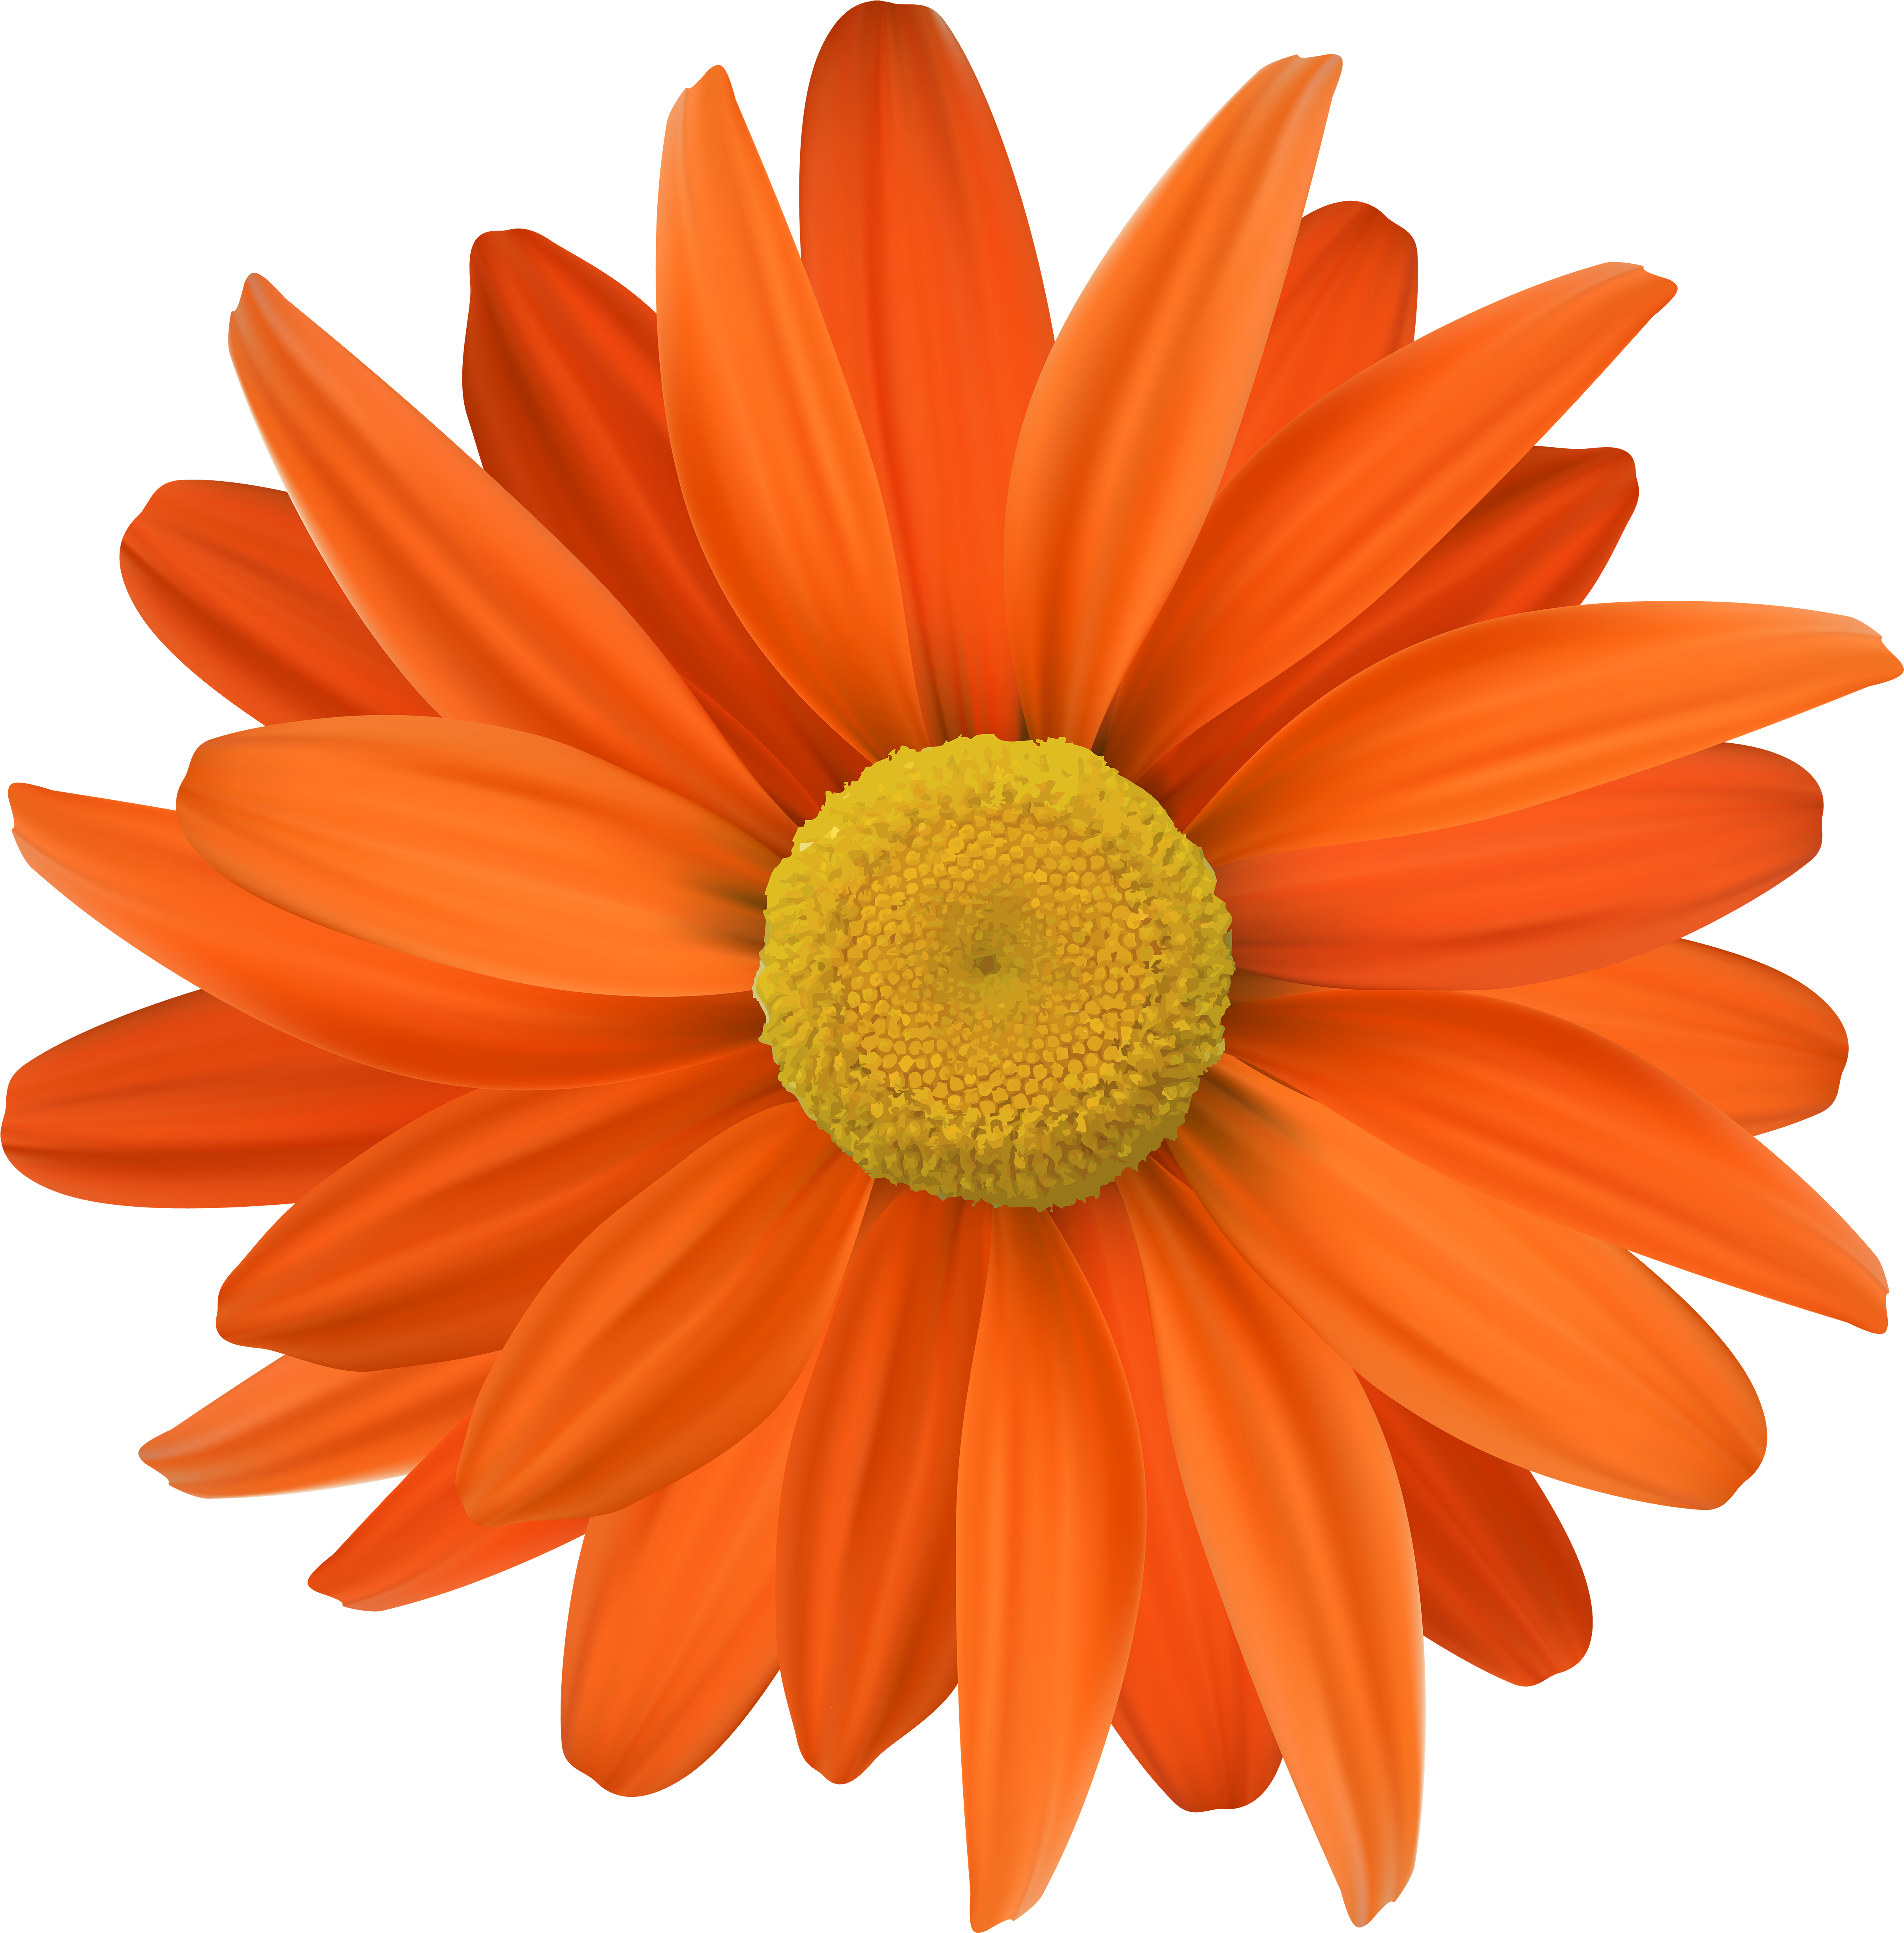 5000 X 5076 11 - Orange Colour Flowers Clipart (5000x5076), Png Download